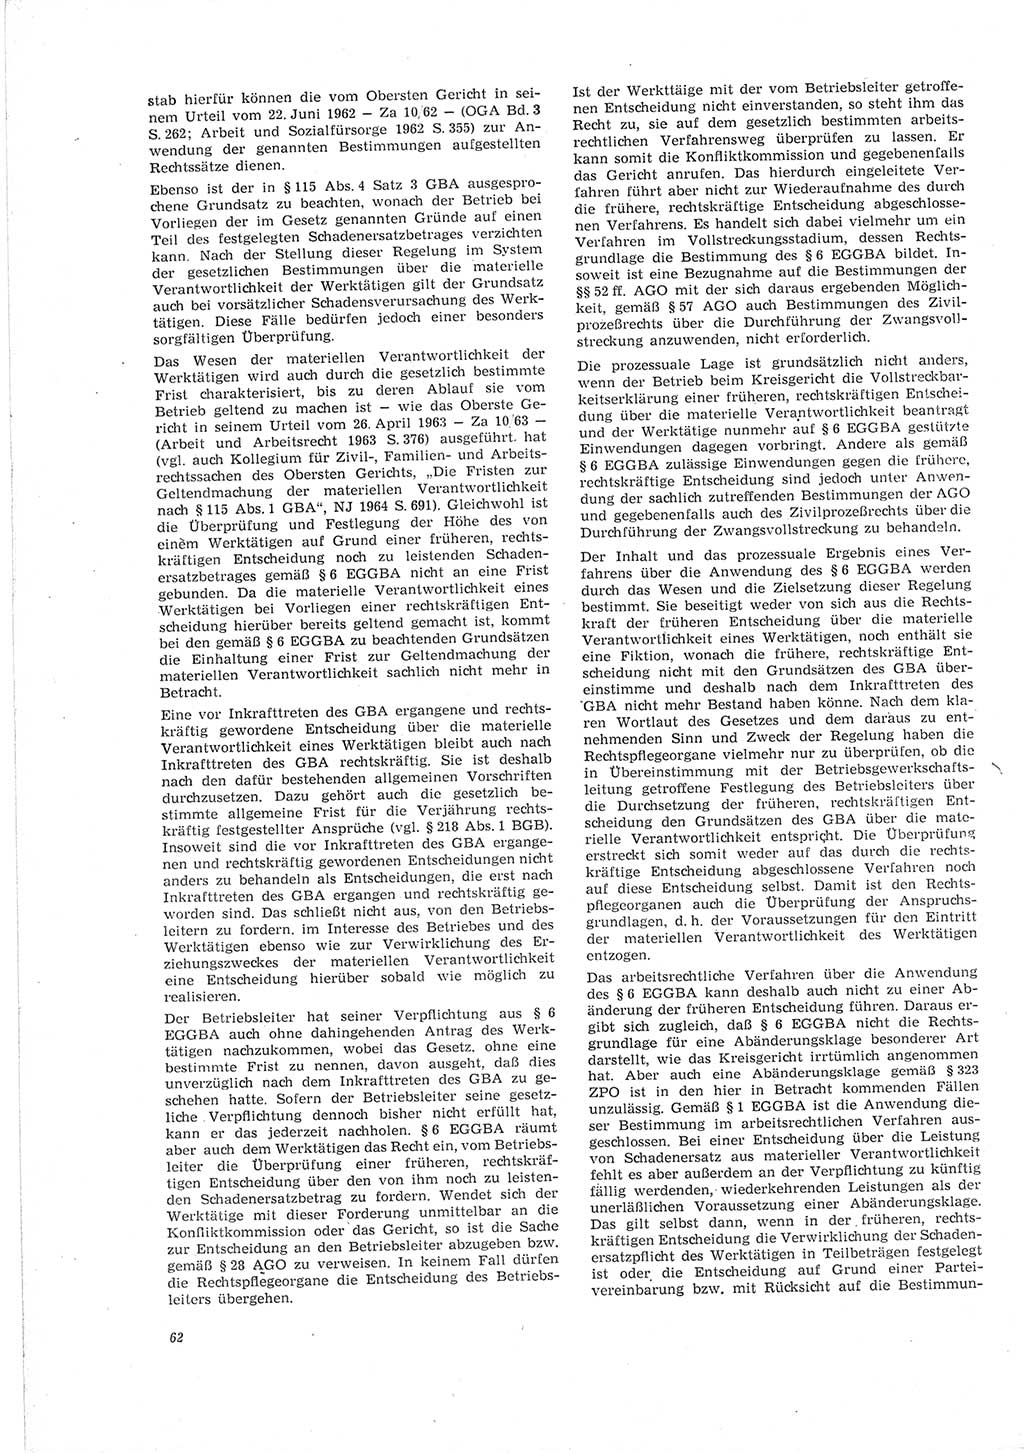 Neue Justiz (NJ), Zeitschrift für Recht und Rechtswissenschaft [Deutsche Demokratische Republik (DDR)], 19. Jahrgang 1965, Seite 62 (NJ DDR 1965, S. 62)